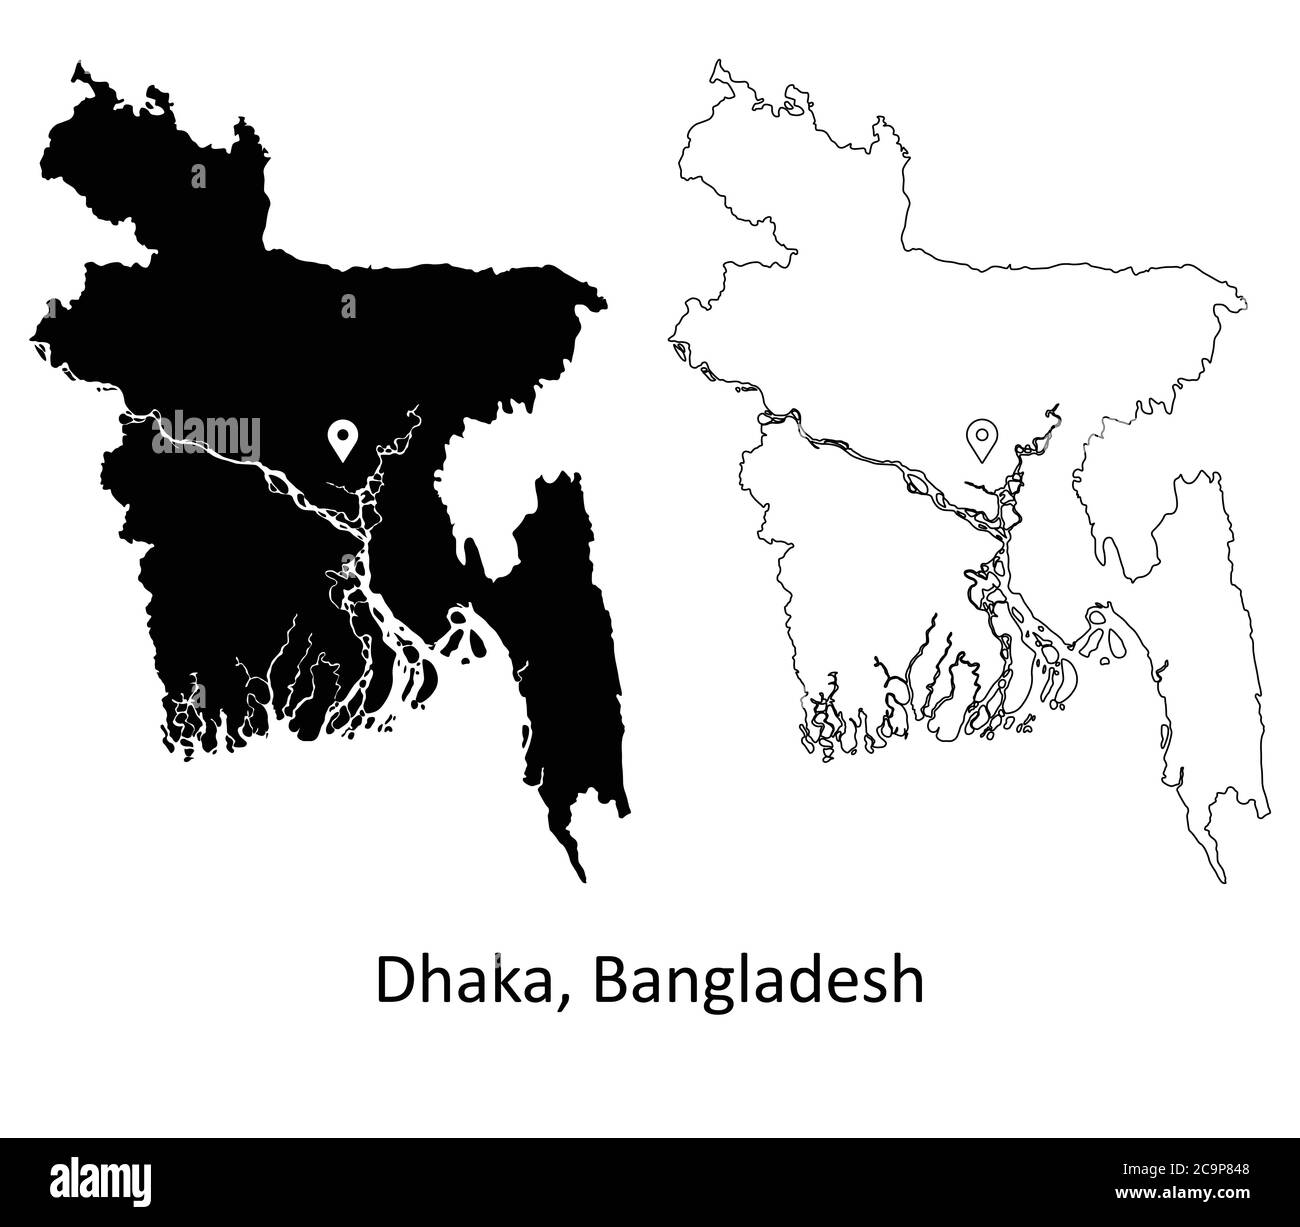 Dhaka Bangladesh. Carte détaillée du pays avec code PIN Capital City Location. Cartes silhouettes et vectorielles noires isolées sur fond blanc. Vecteur EPS Illustration de Vecteur